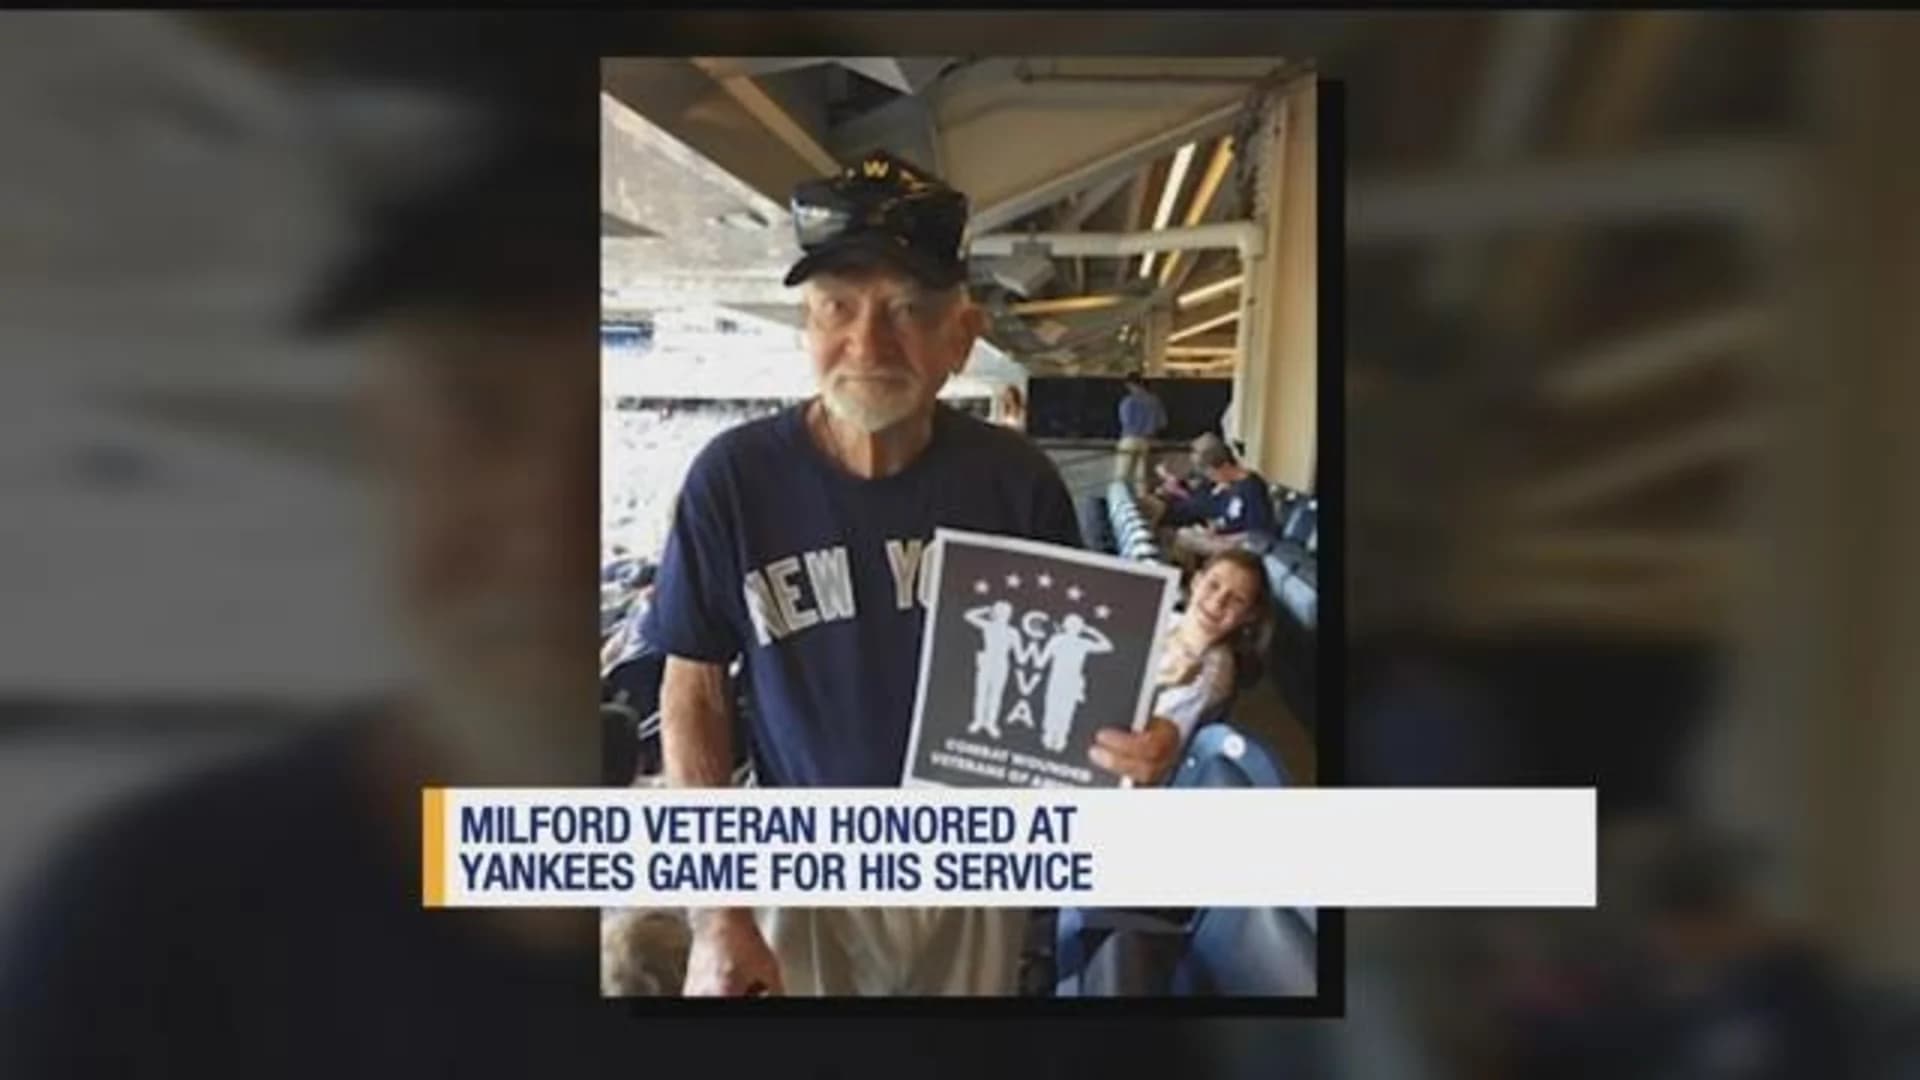 Yankees name Milford man 'Veteran of the Game'